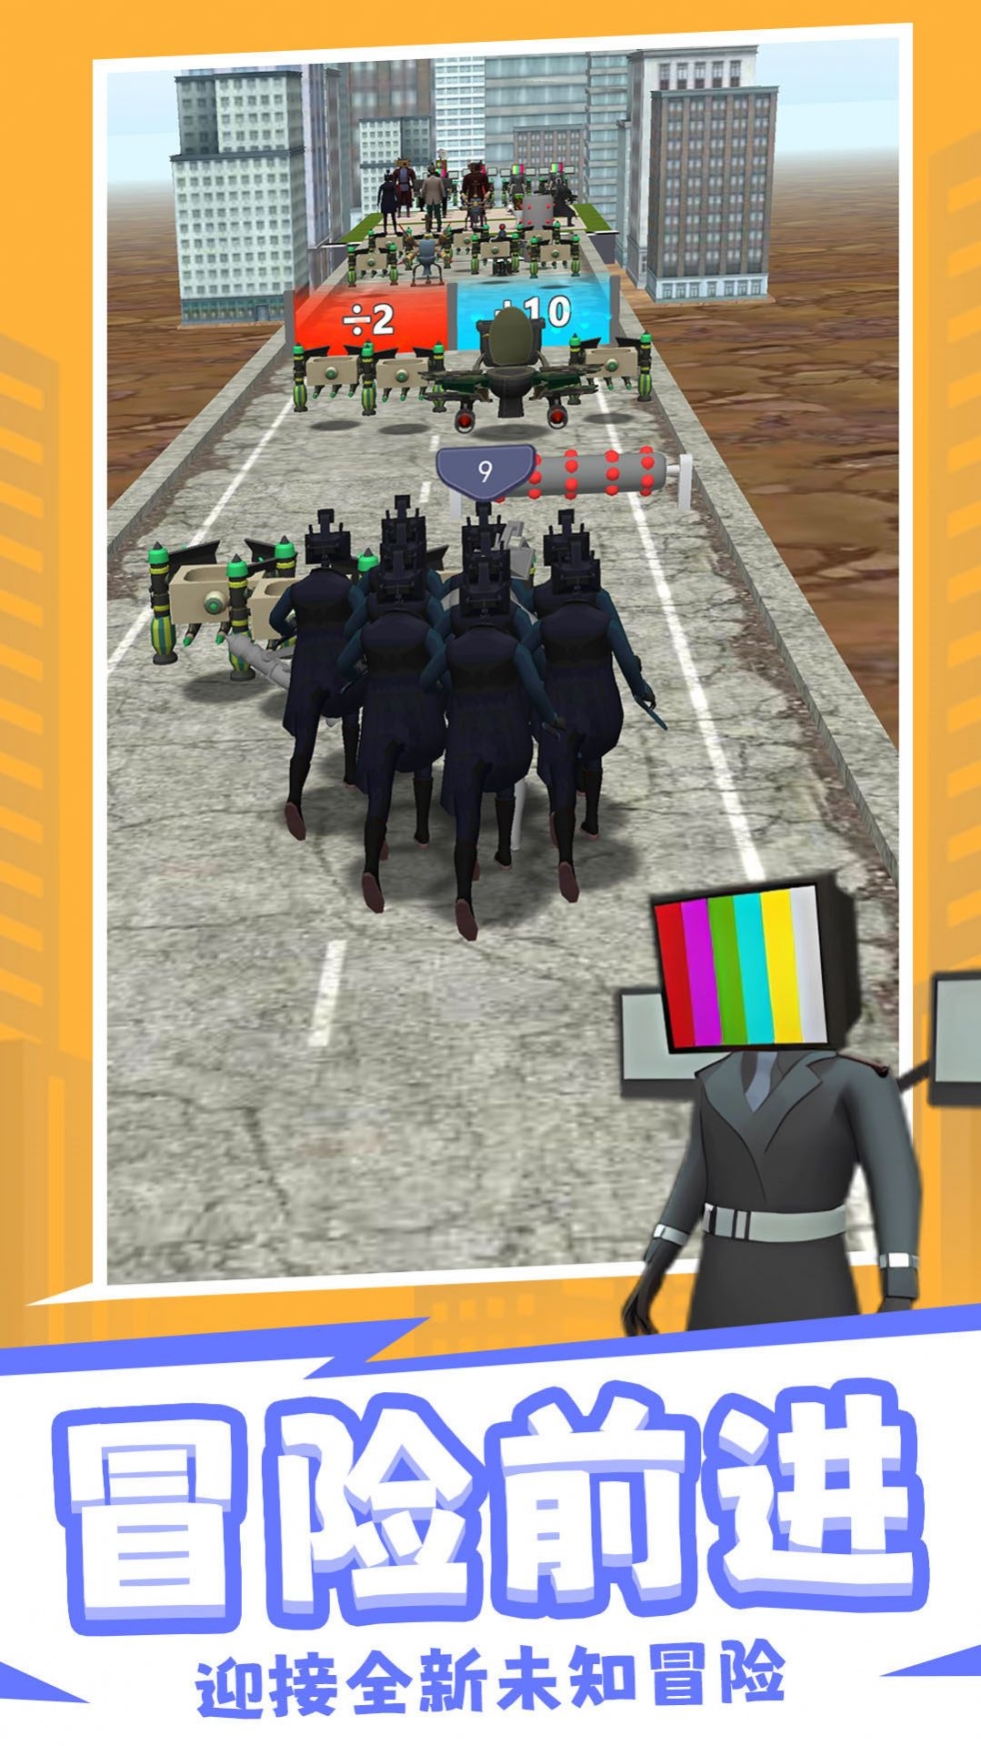 马桶人对战3D英雄游戏安卓版下载 v1.0.0截图1